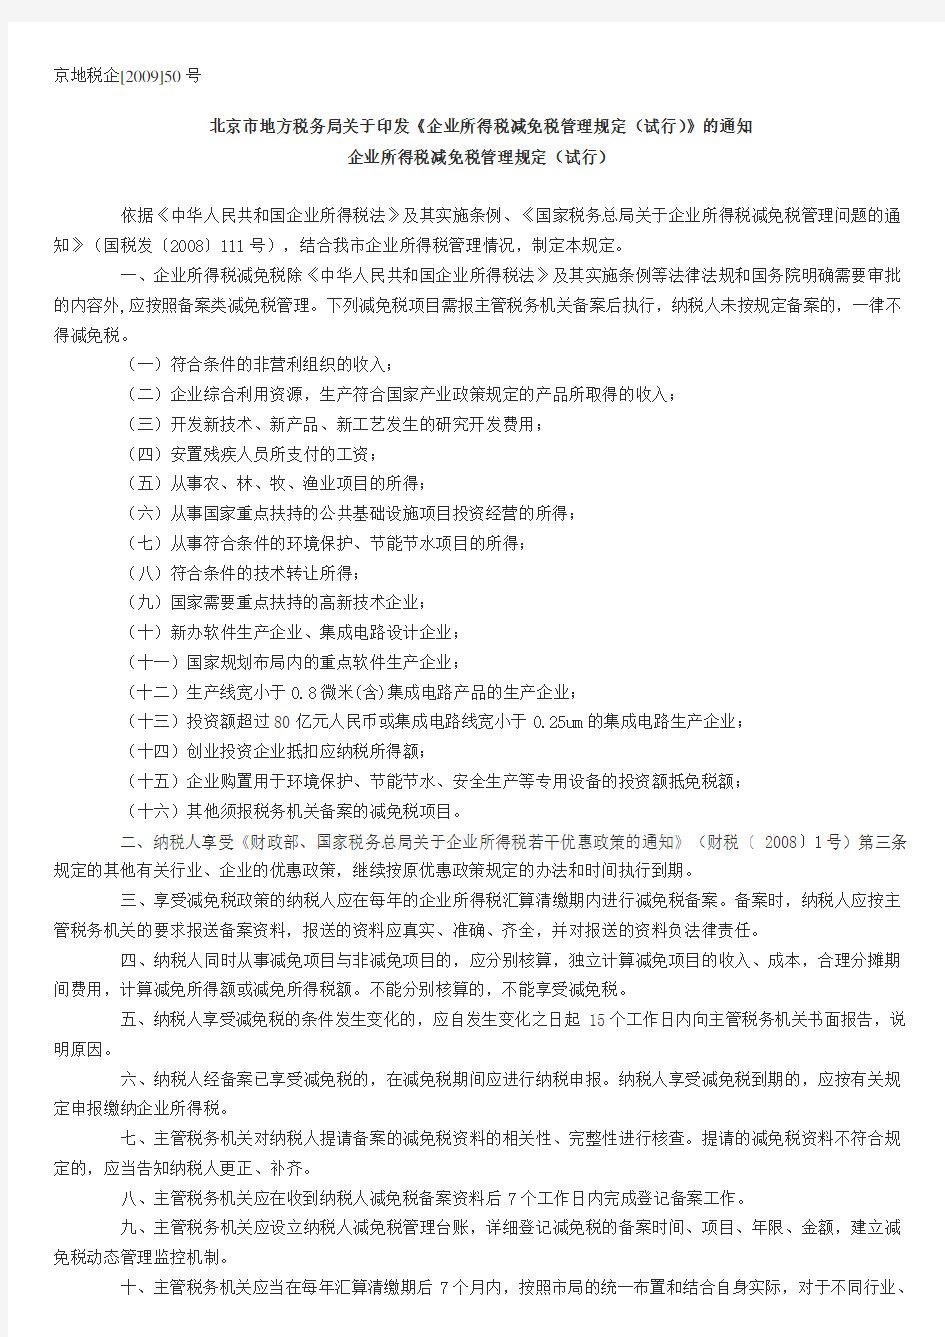 北京市地方税务局关于印发《企业所得税减免税管理规定(试行)》的通知